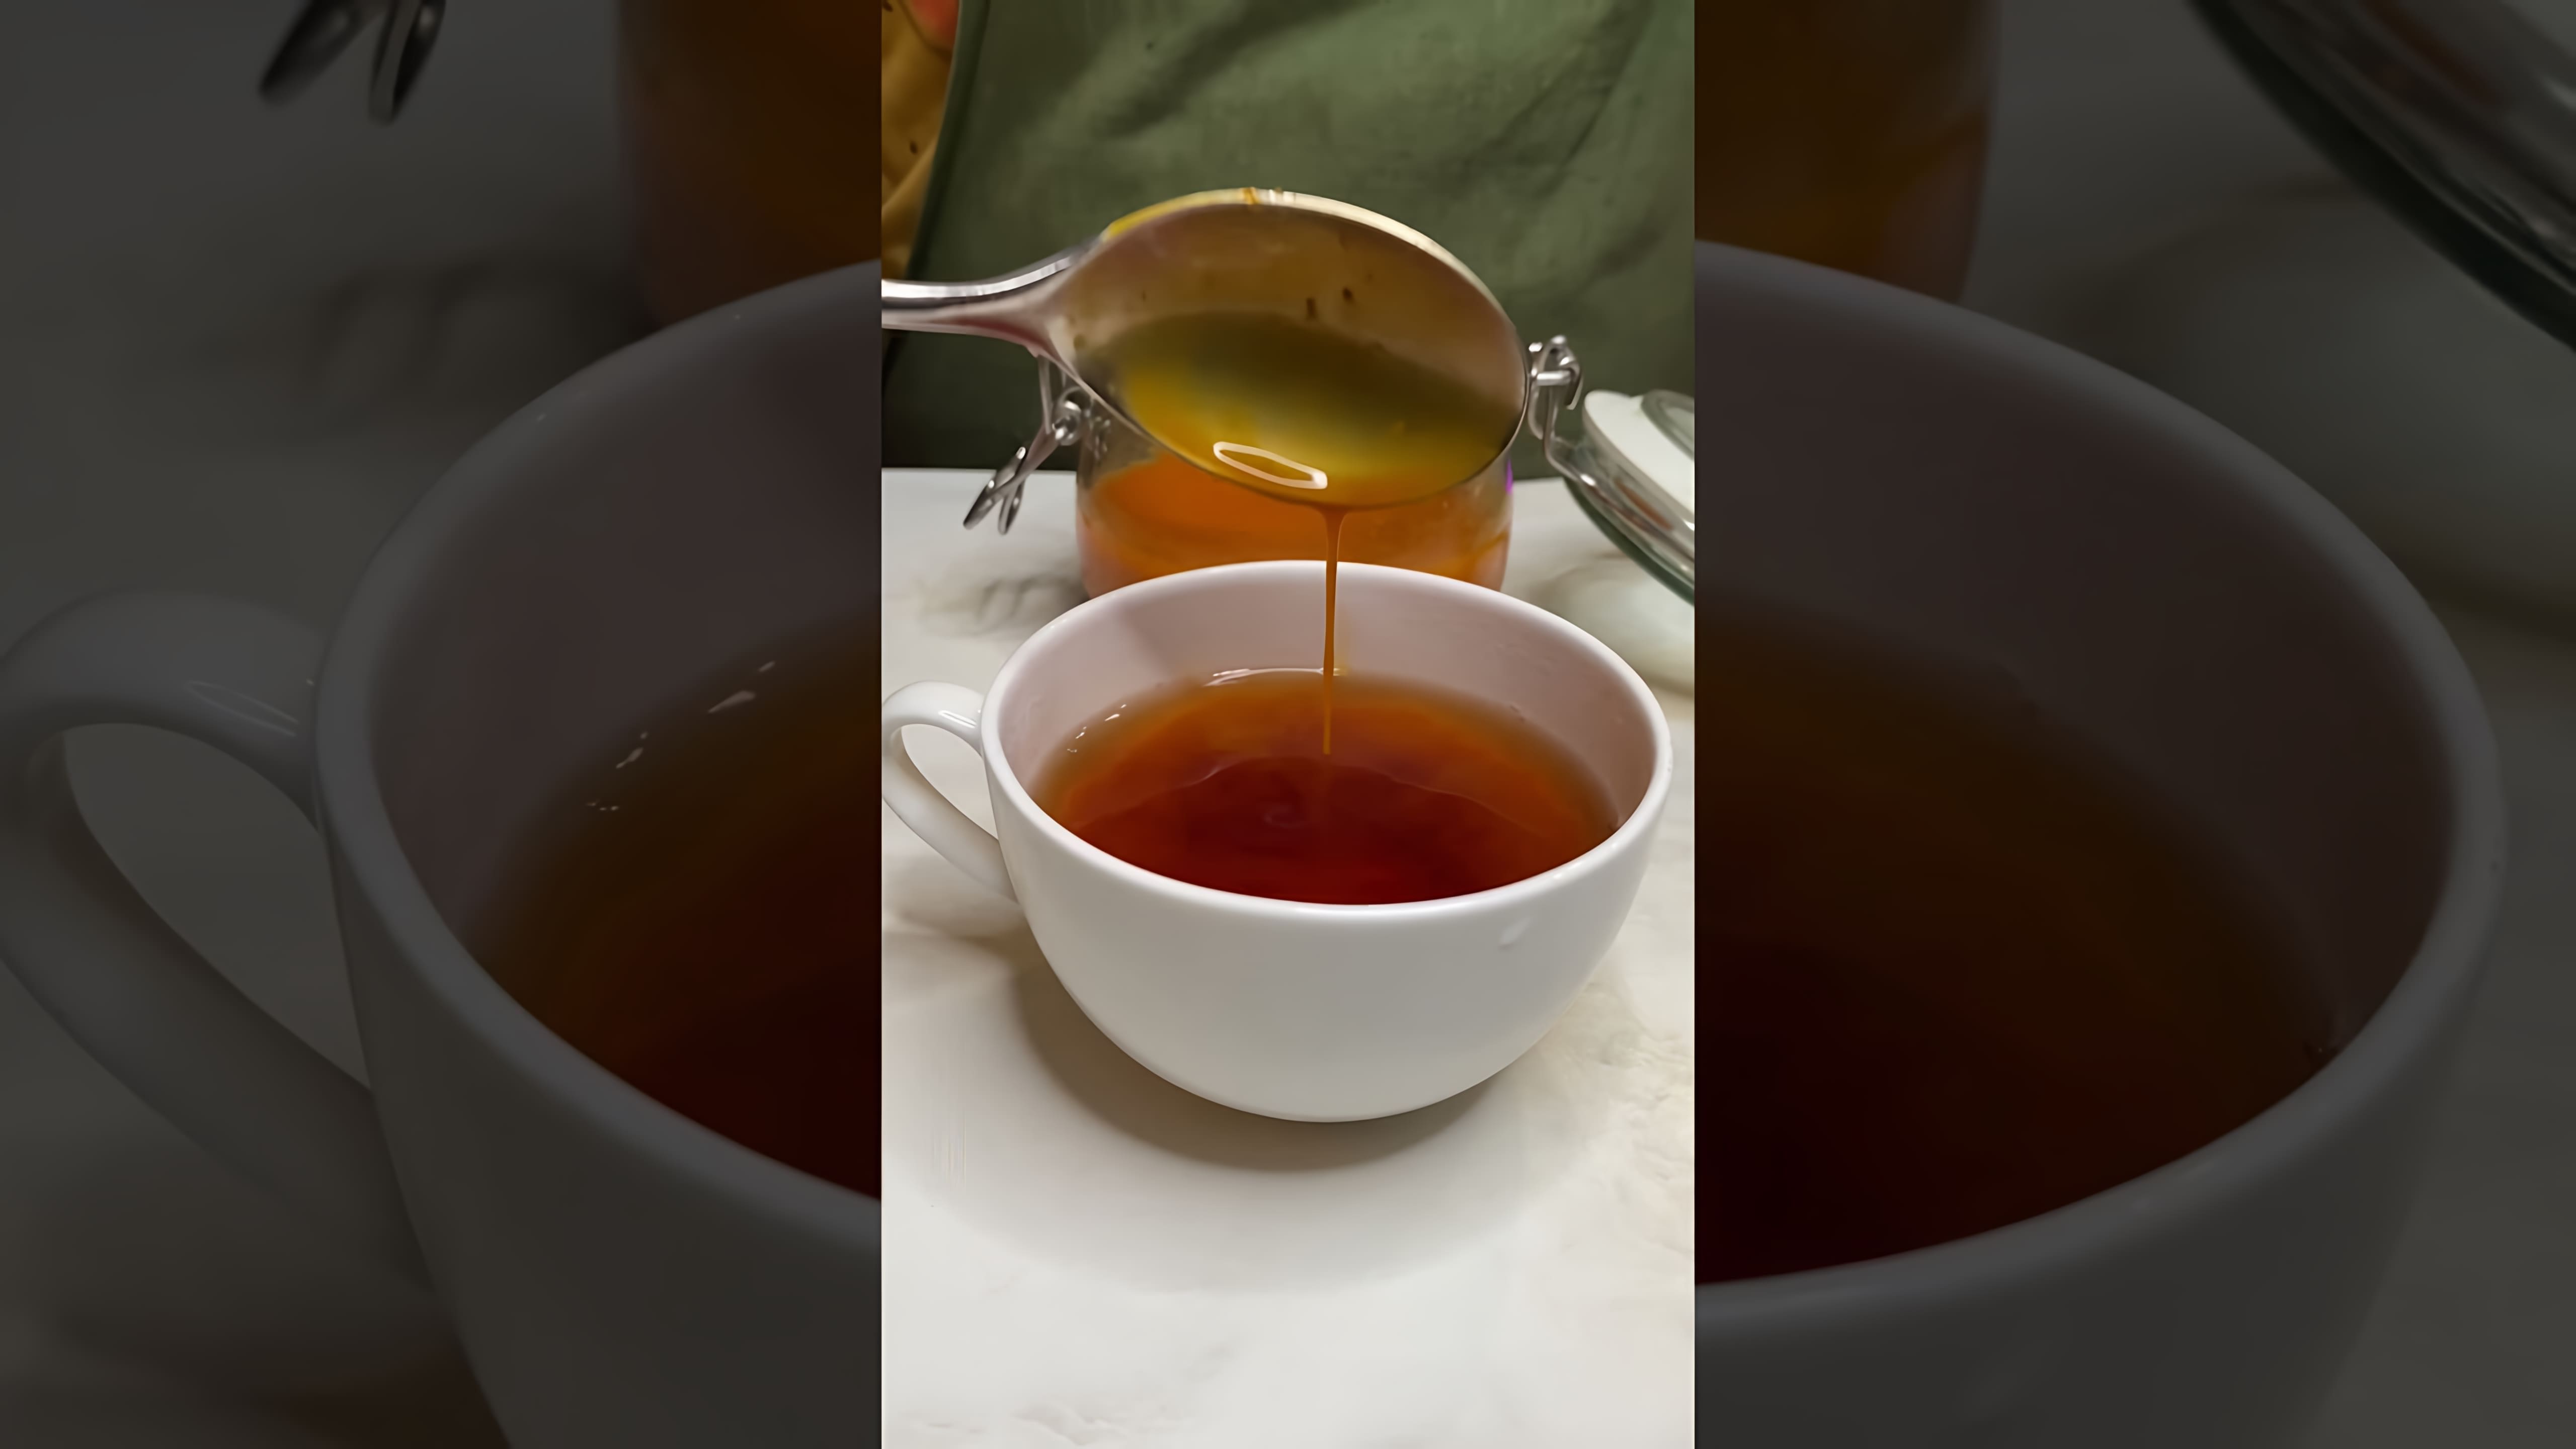 В этом видео демонстрируется простой способ приготовления заготовки облепихового чая, который позволяет сэкономить время